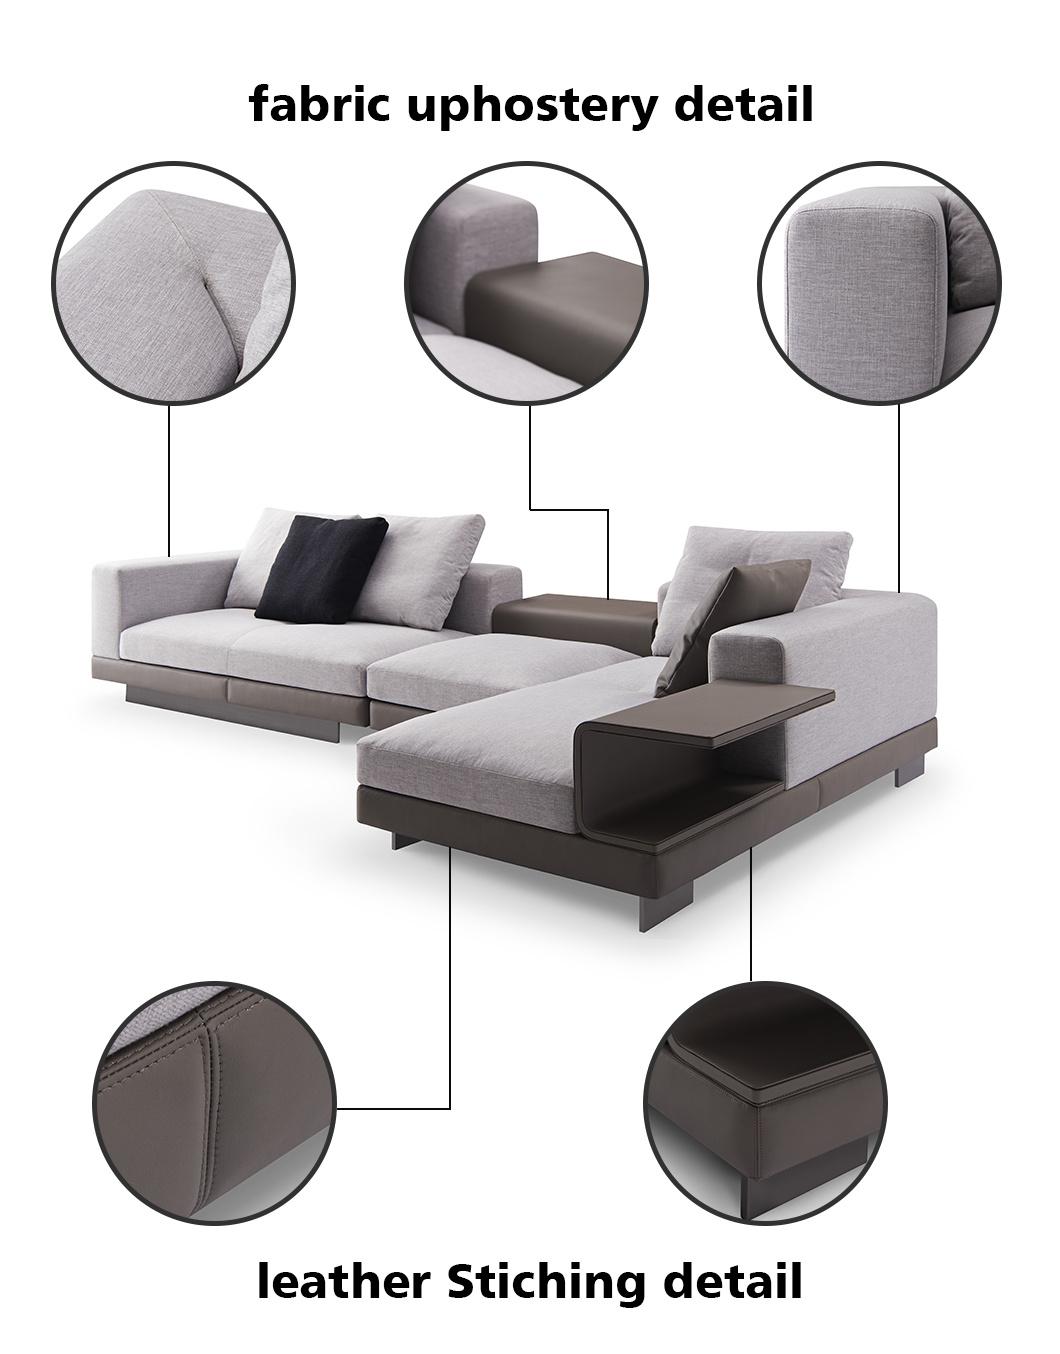 Living Room Furniture Set Luxury Furniture Lounge Sofa Modern Home Center Sofa Dubai Leather Fabric Sofa